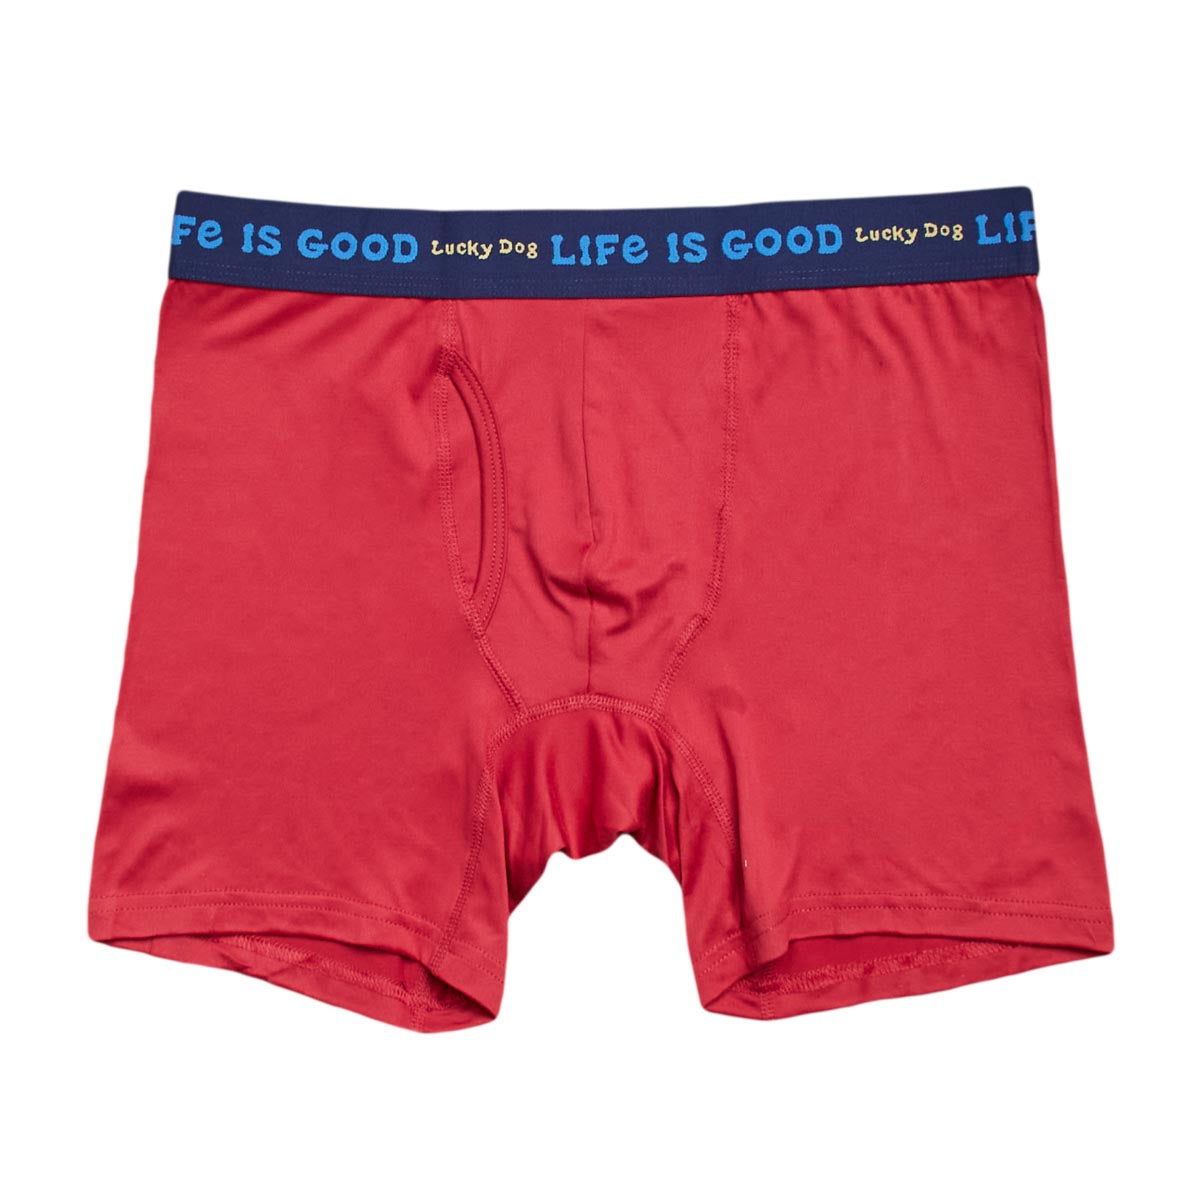 IZOD Men's Underwear - Performance Stretch Boxer Briefs with